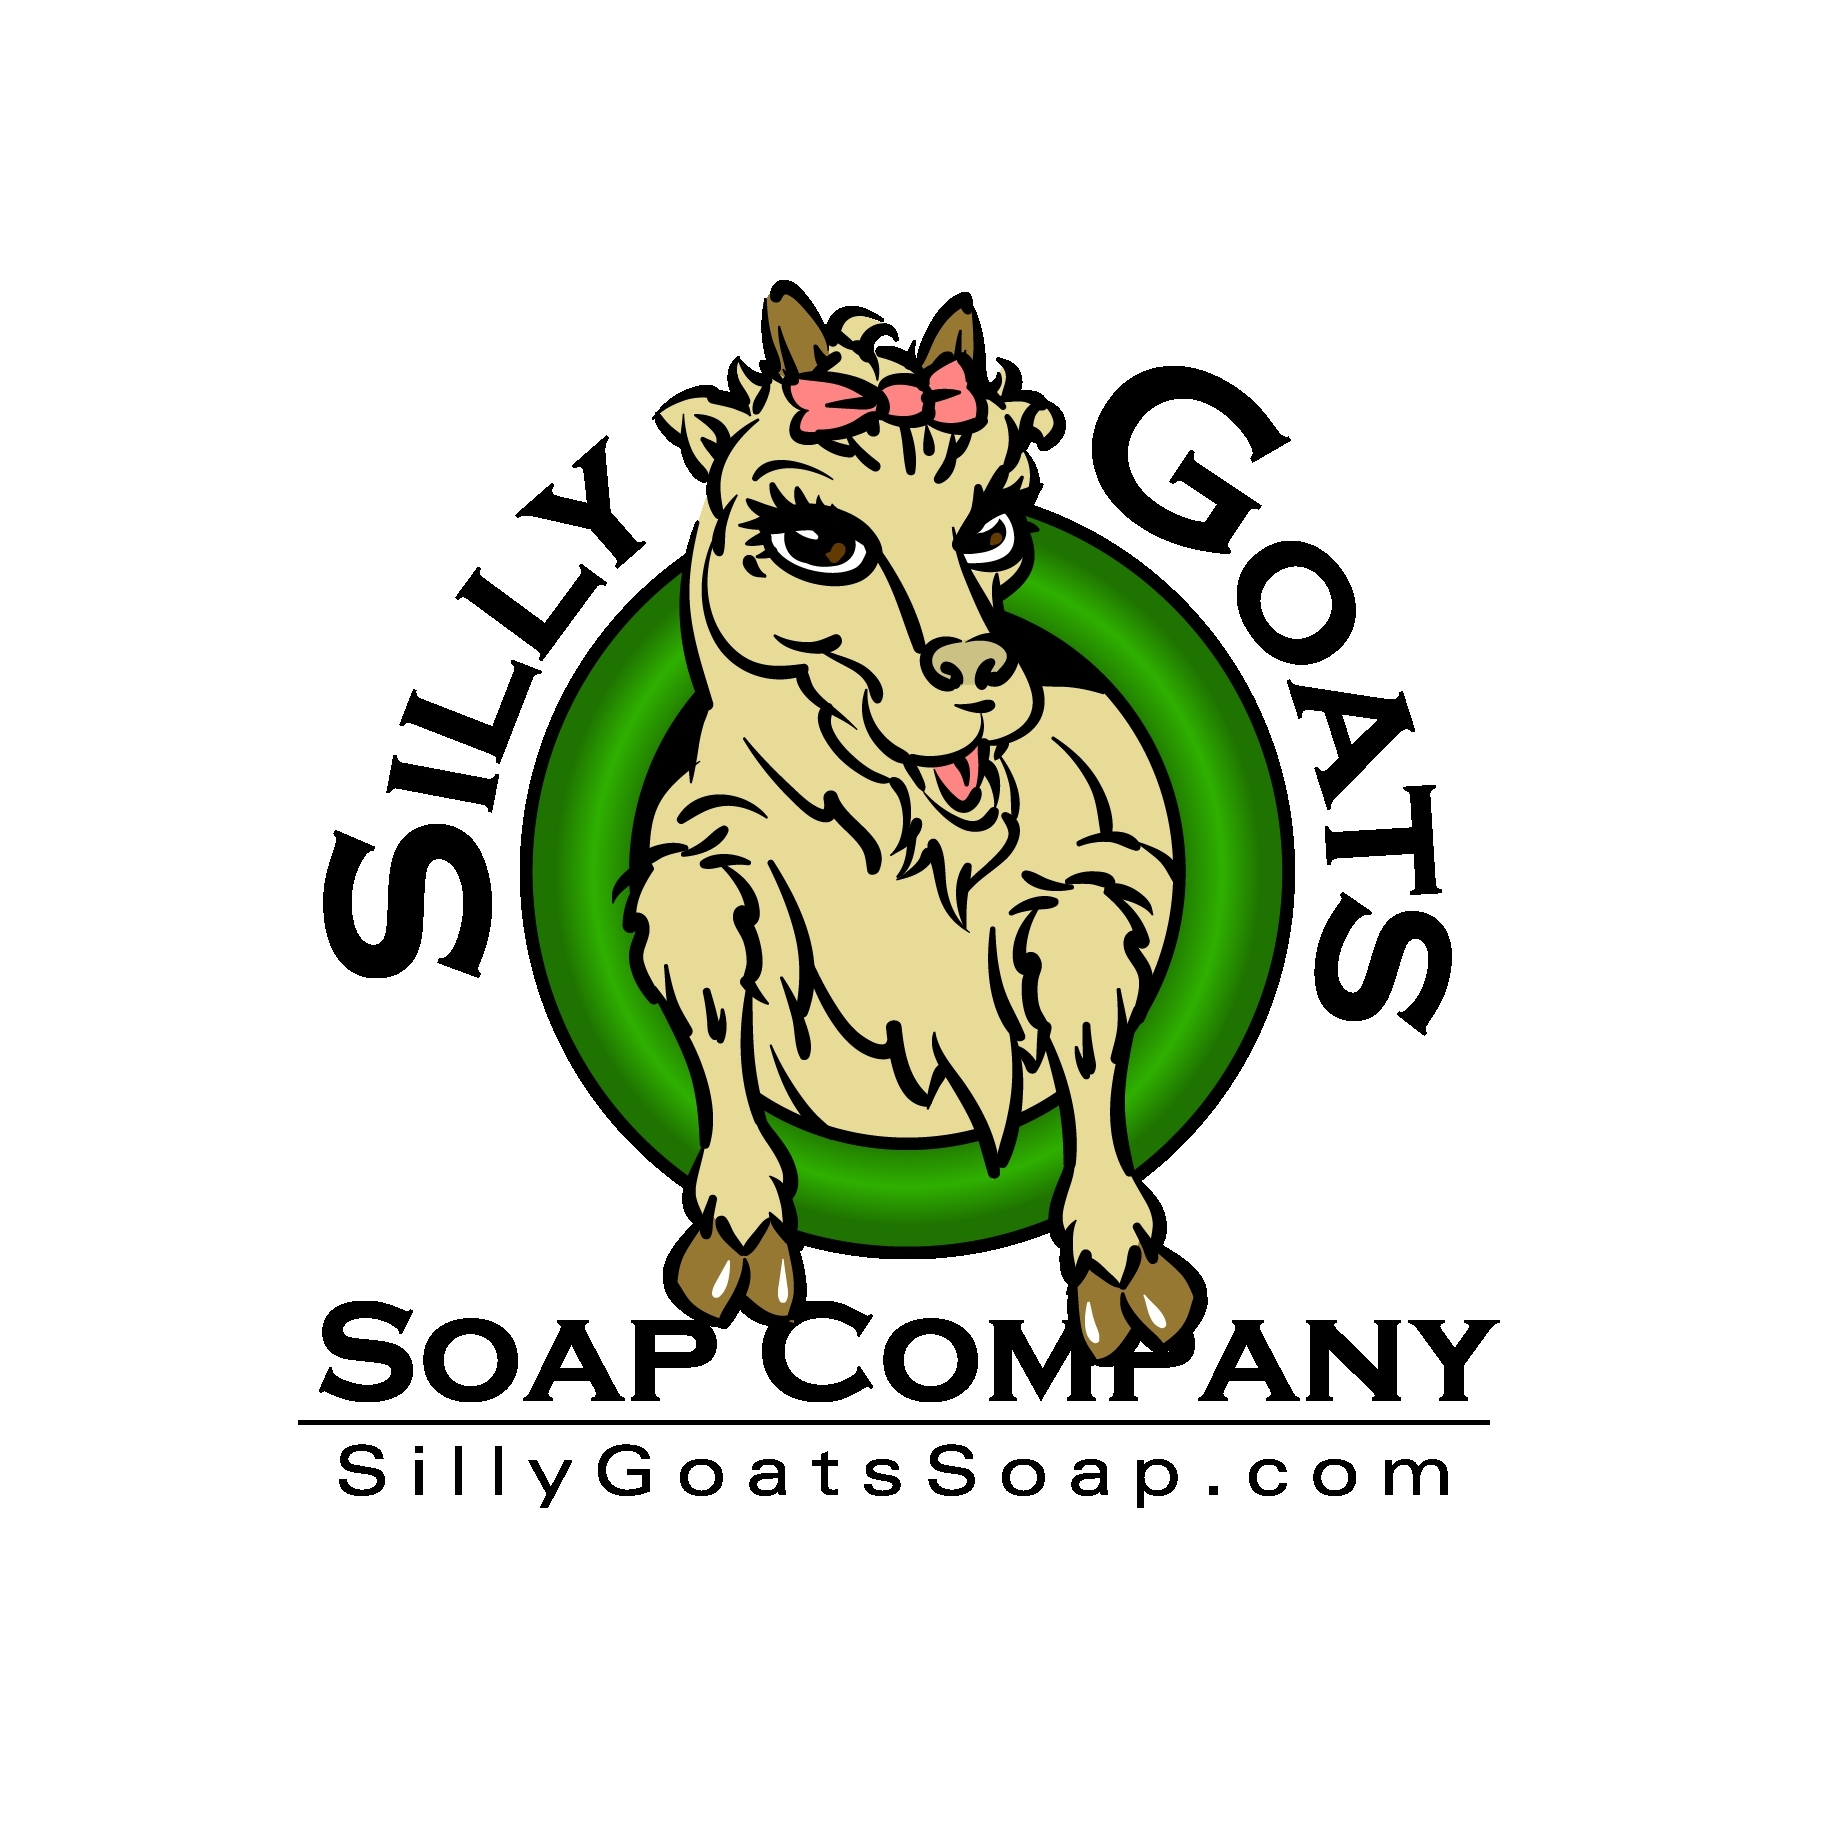 Company Logo For Silly Goats Soap Company'